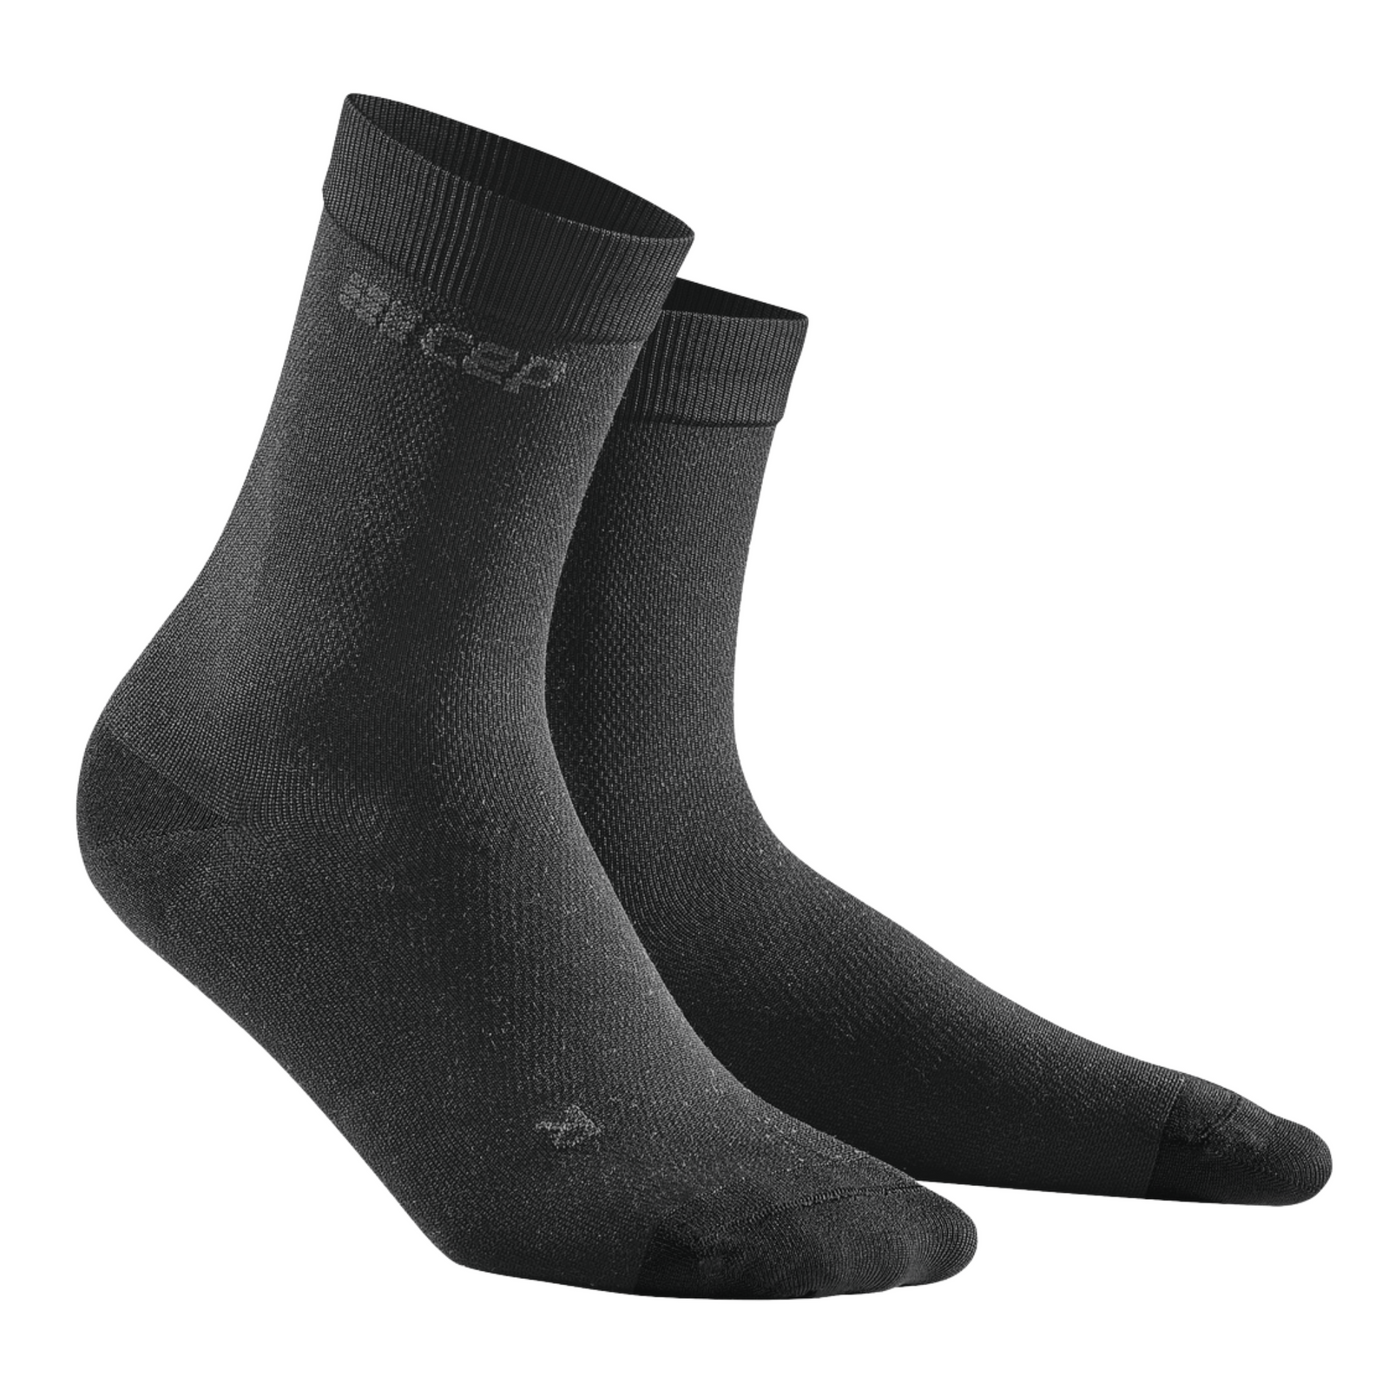 Allday Mid Cut Compression Socks, Men, Dark Grey, Side View